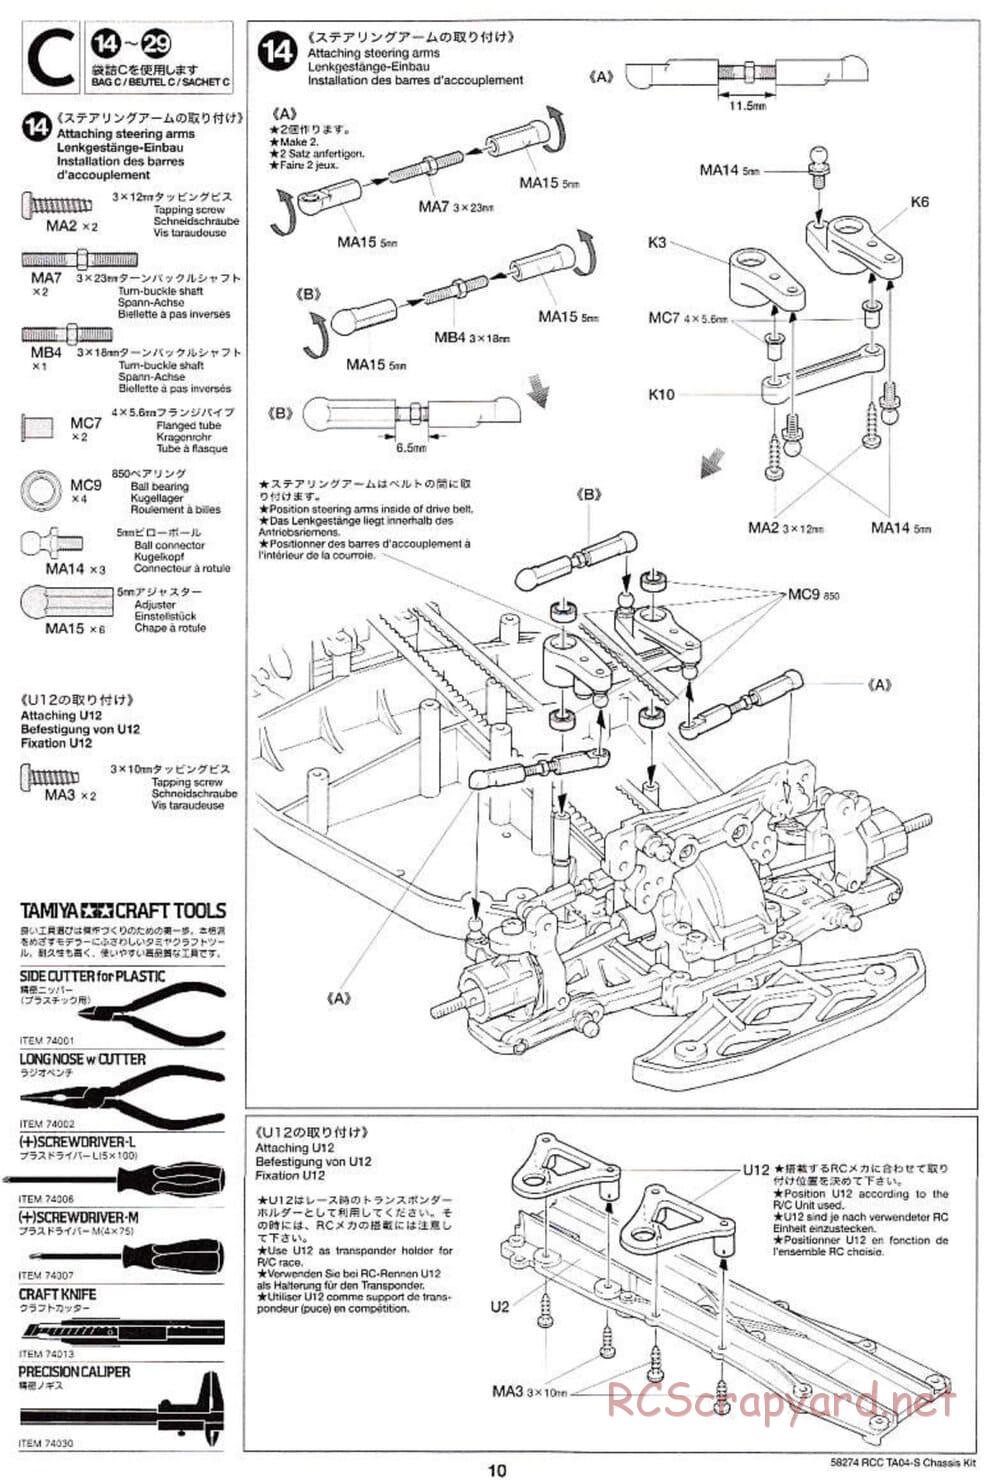 Tamiya - TA-04S Chassis - Manual - Page 10